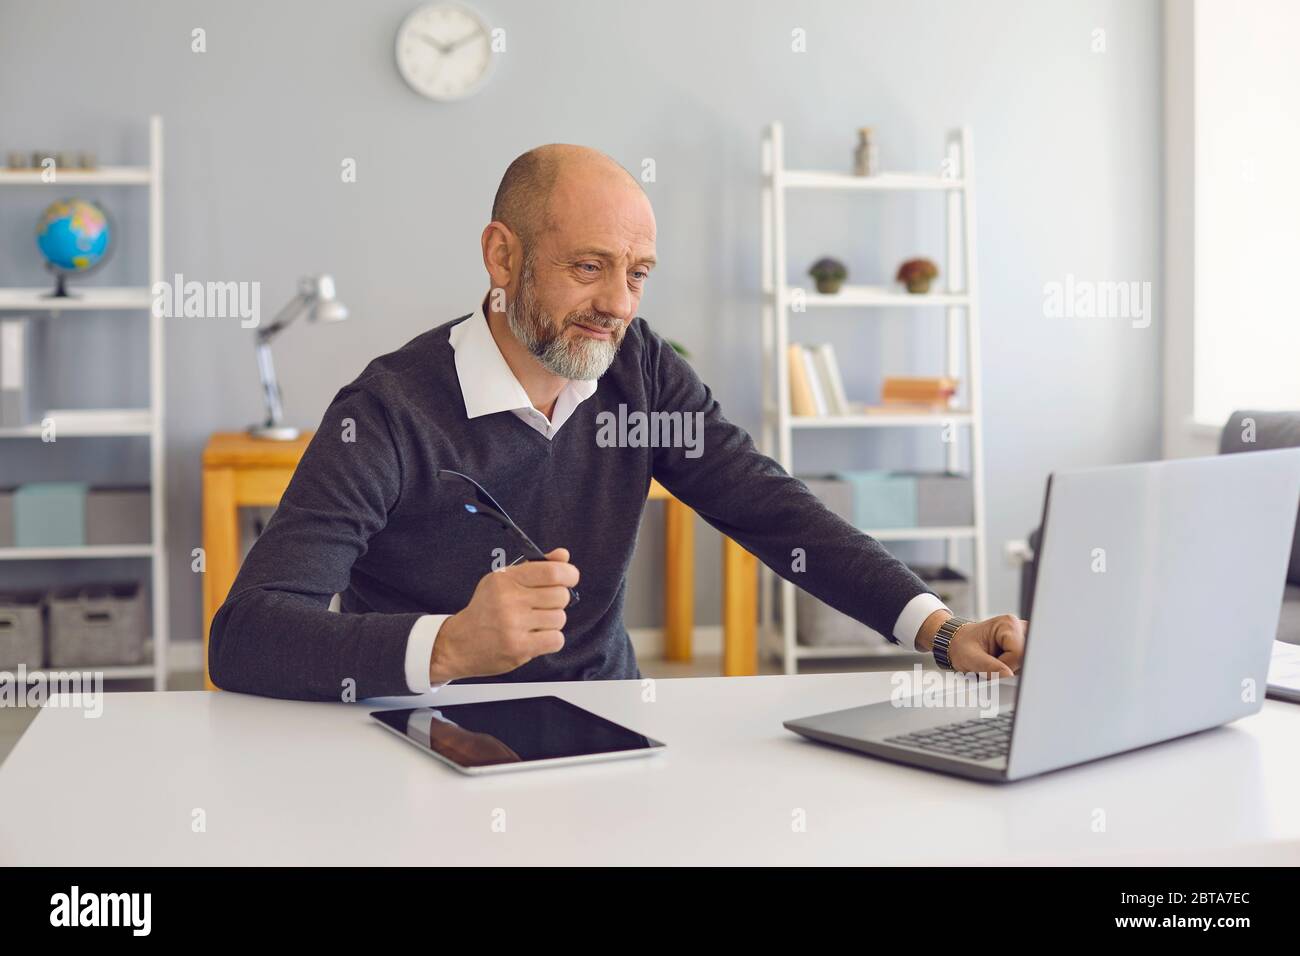 Un homme âgé travaille à domicile avec un ordinateur portable. Homme mature et confiant avec une barbe grise analyse une stratégie d'affaires à distance dirige une startup sitti Banque D'Images